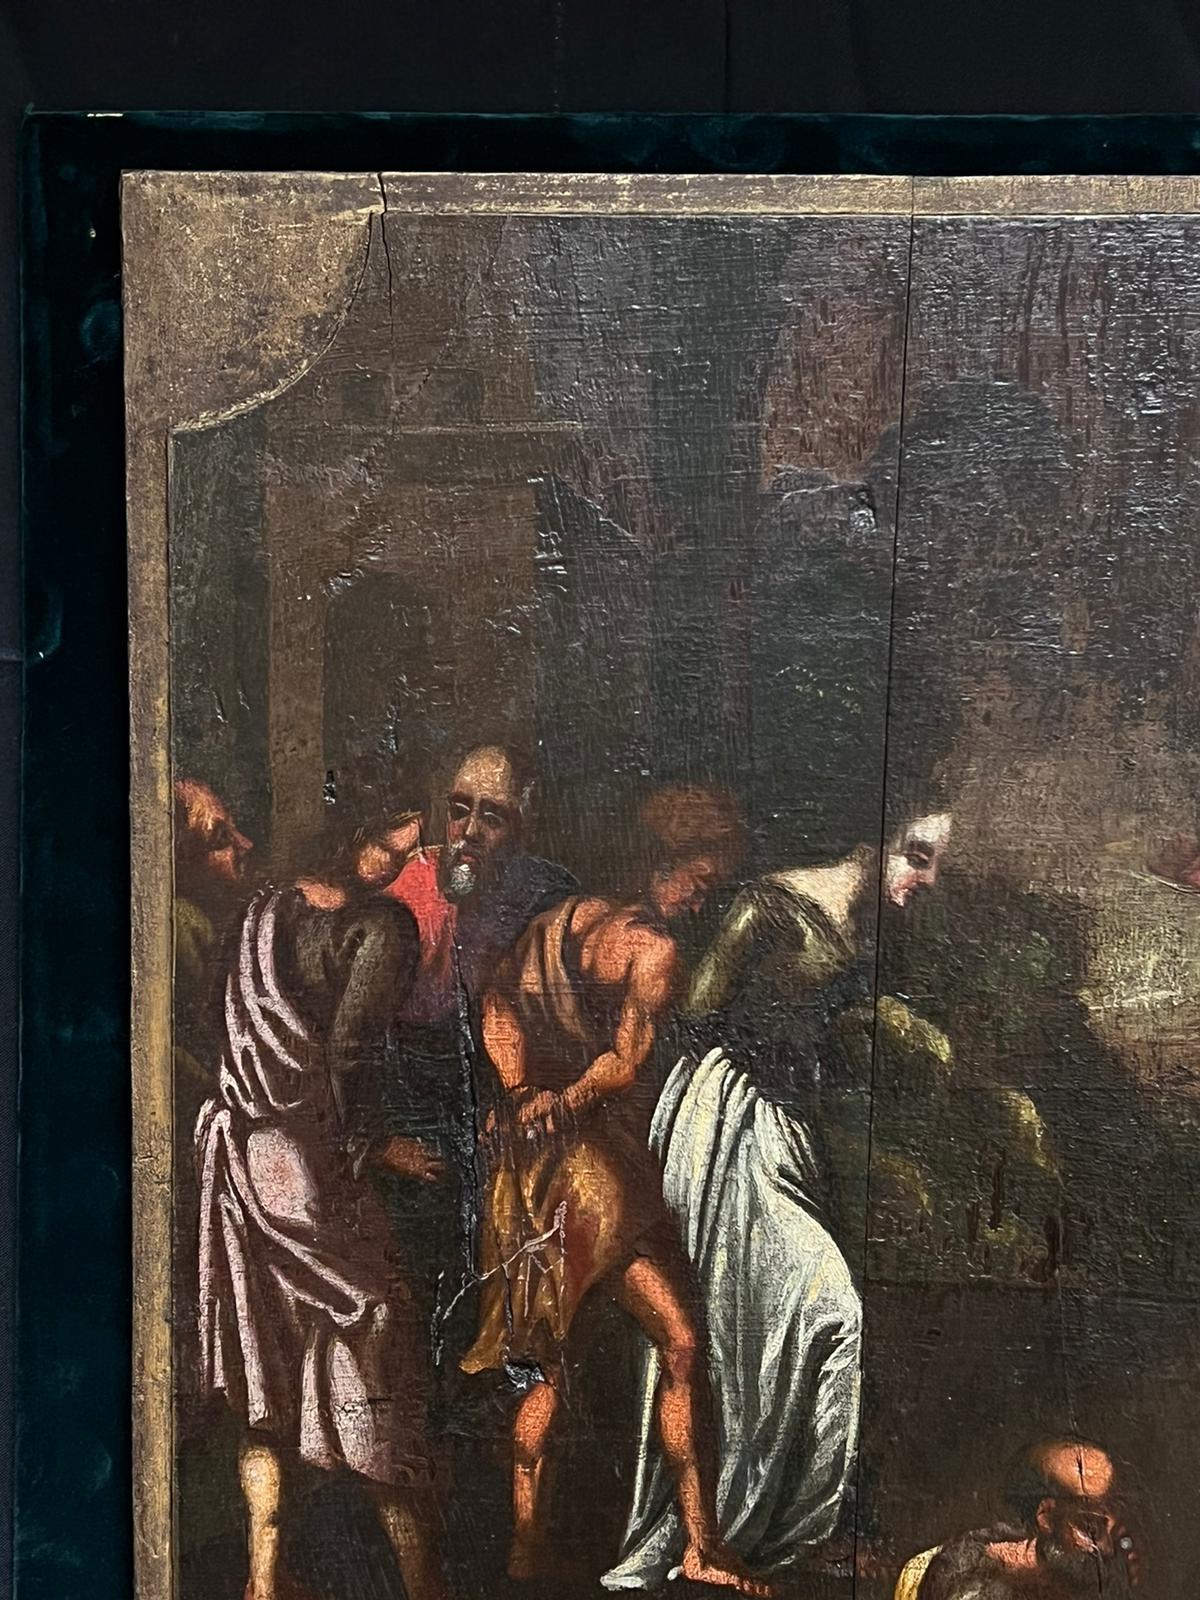 Figures bibliques, Grand rassemblement autour du Christ ?
Vieux maître hollandais, début du 17e siècle
peinture à l'huile sur panneau de bois, collée sur un support en velours
panneau de velours : 27 x 29 pouces
tableau : 25.5 x 26 pouces
provenance